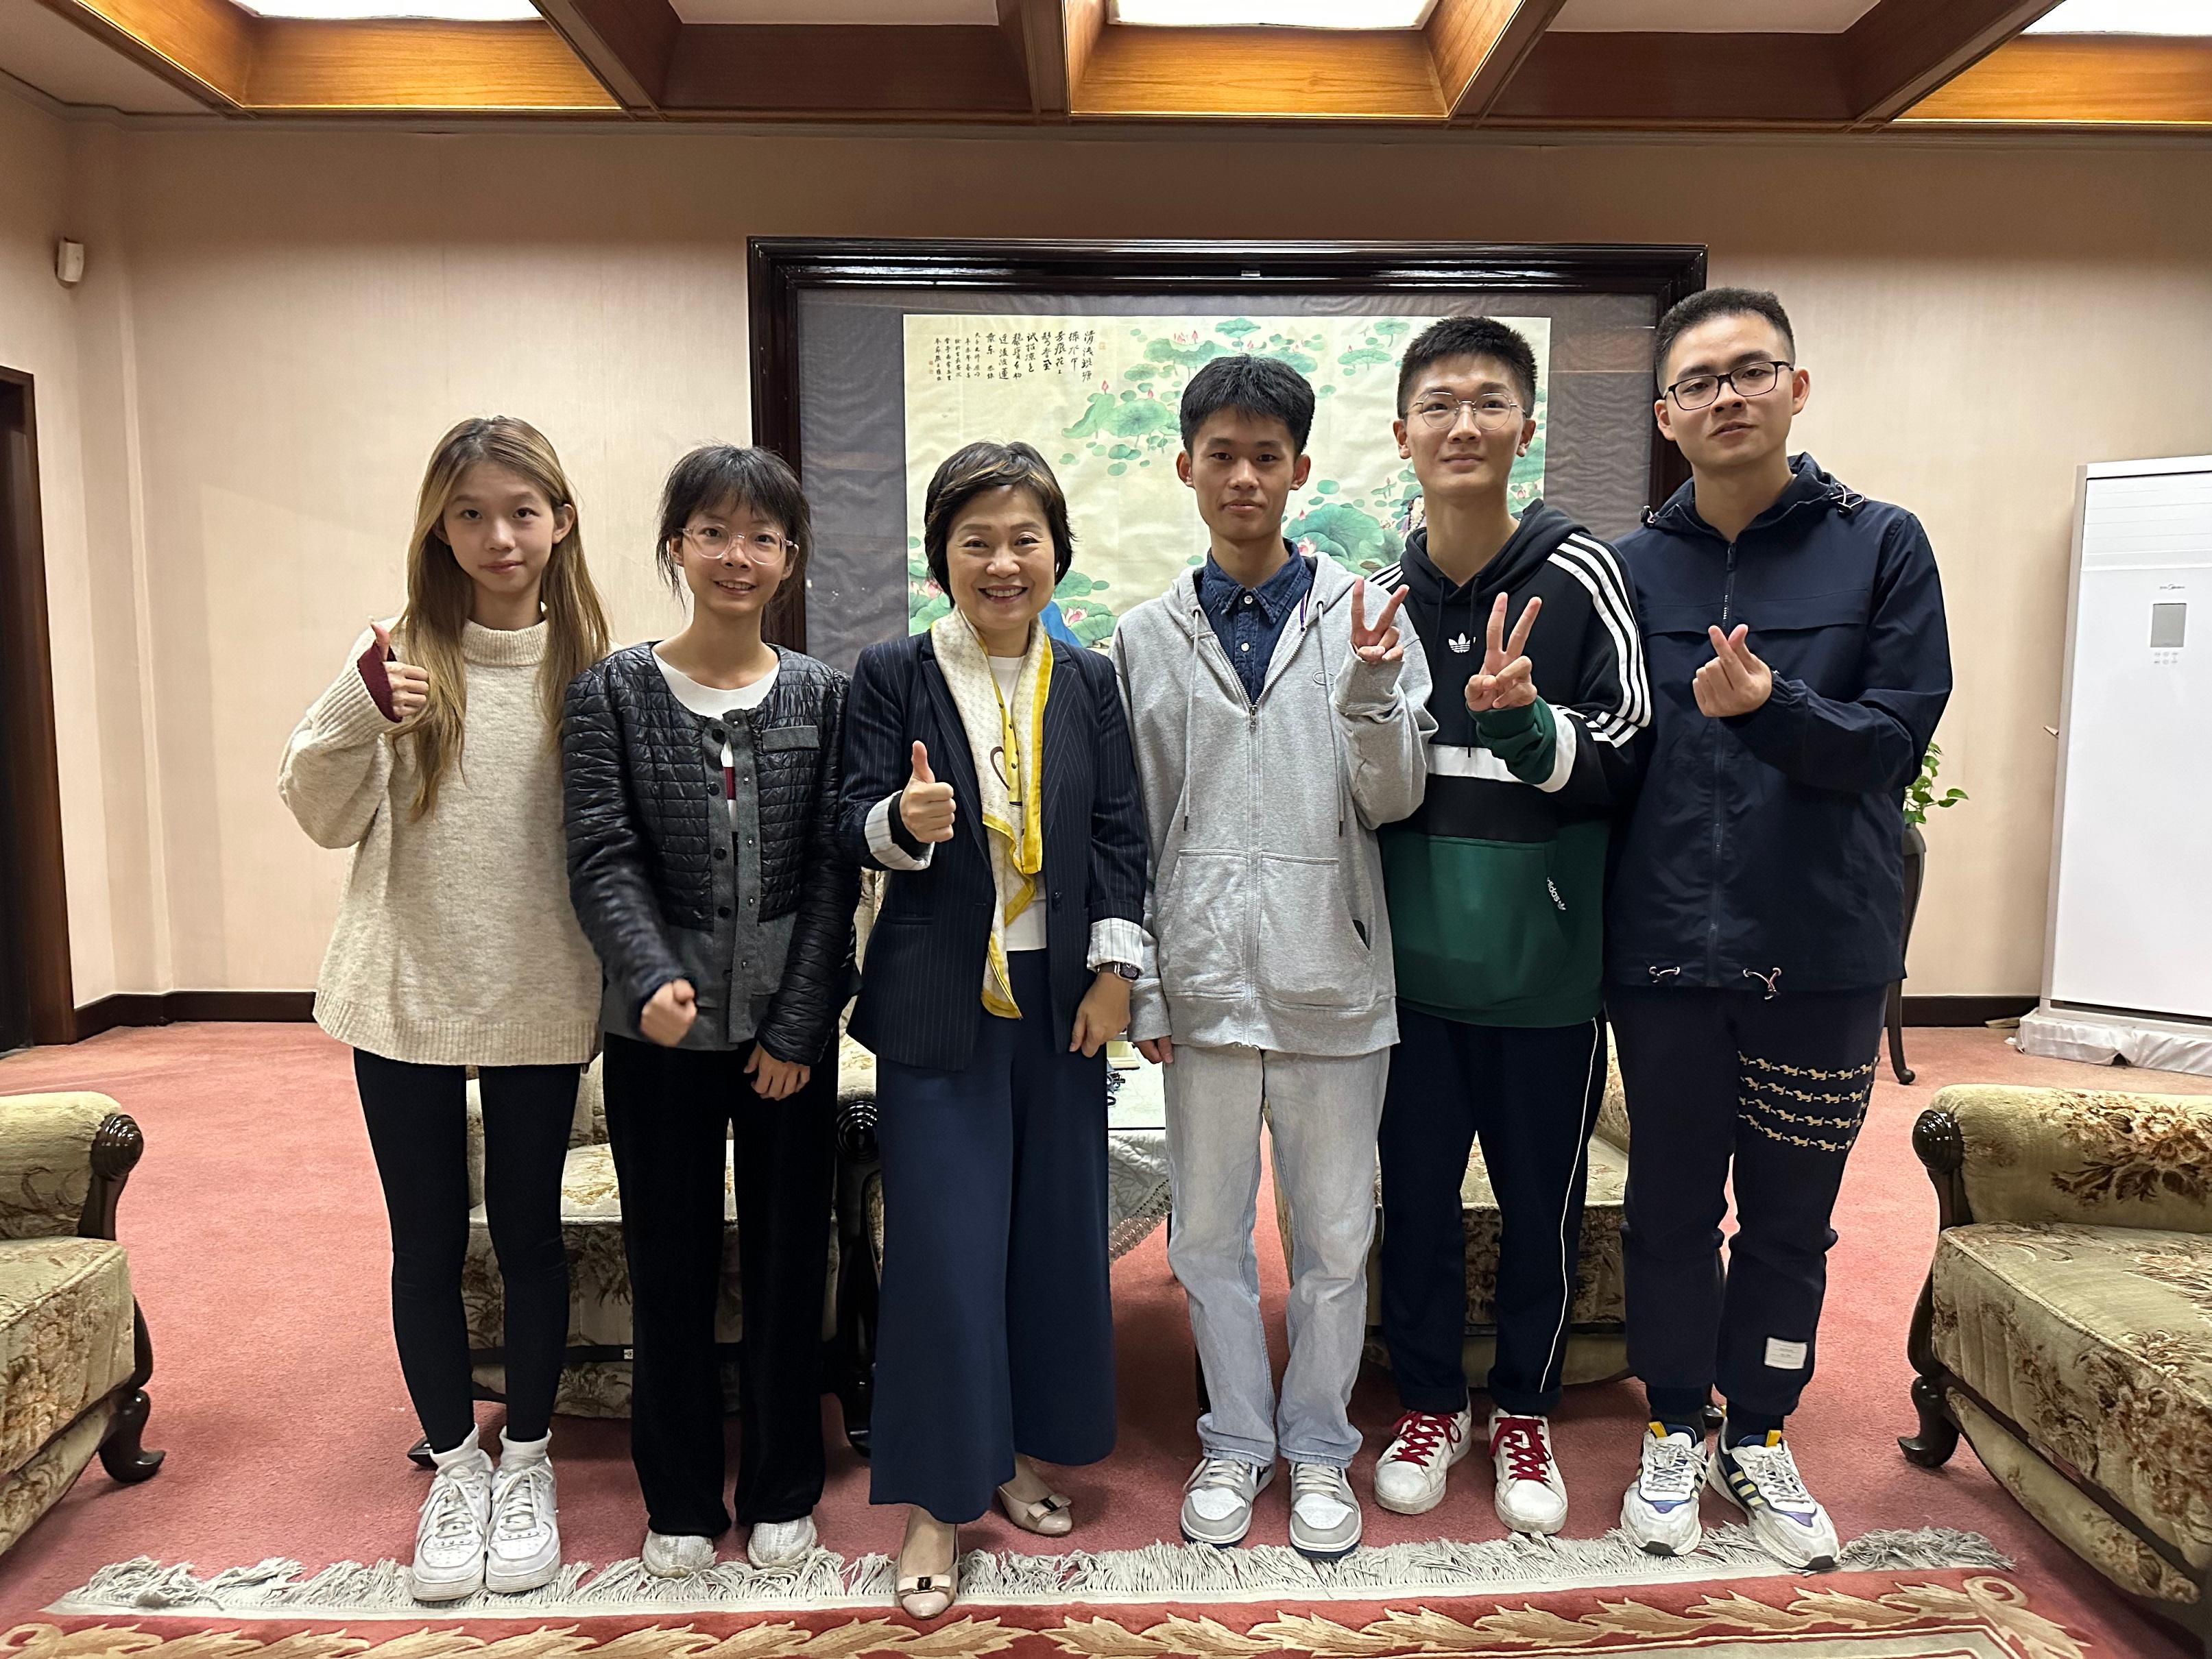 教育局局长蔡若莲博士（左三）十月八日到访西安交通大学，与就读该校的香港学生会面。

